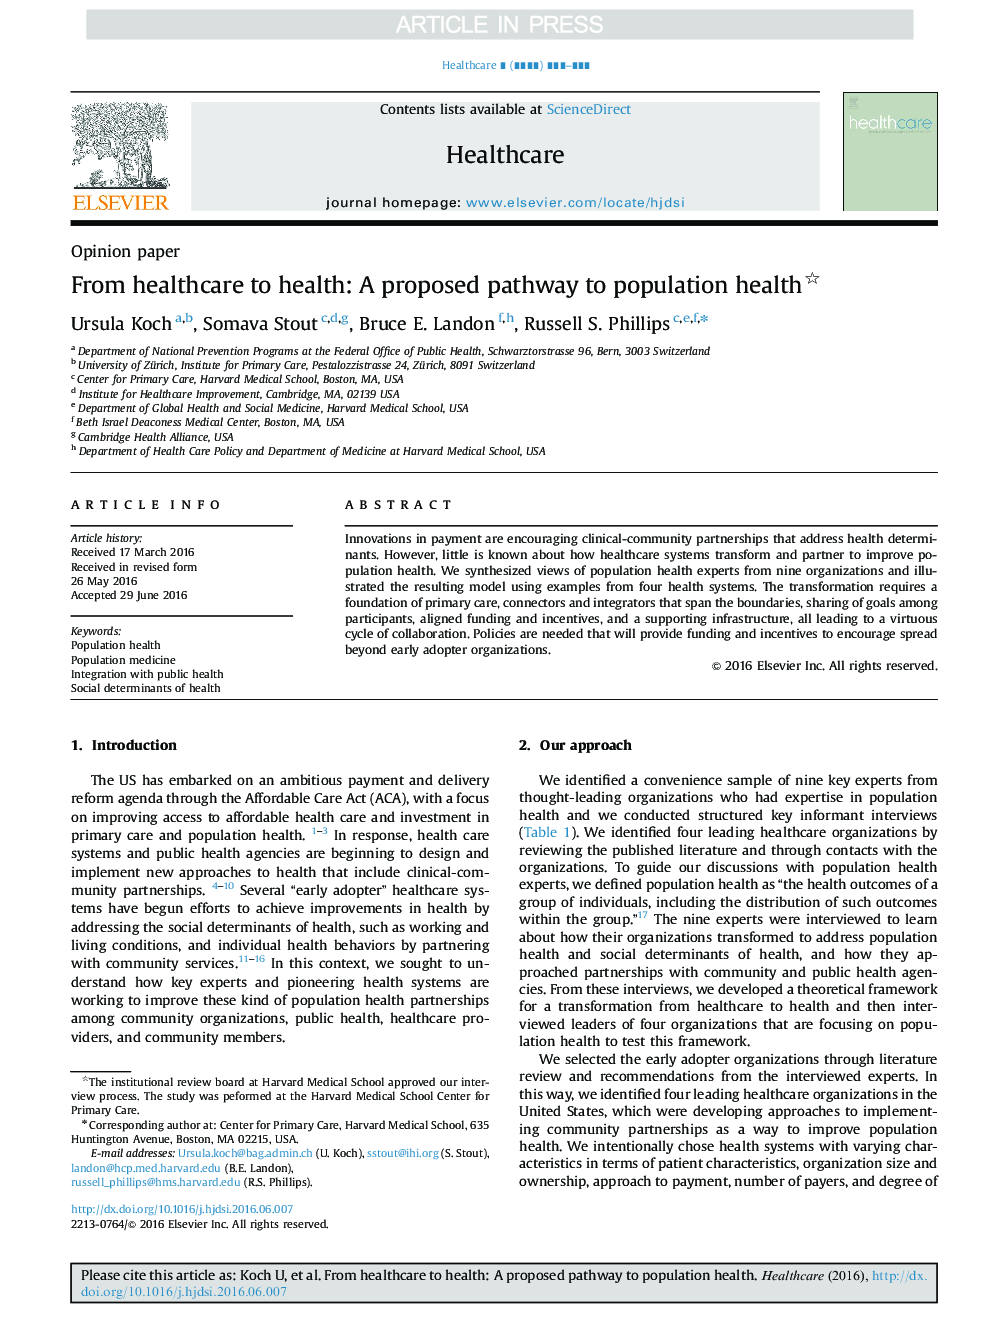 از مراقبت بهداشتی به سلامتی: راه پیشنهادی برای سلامت جمعیت 